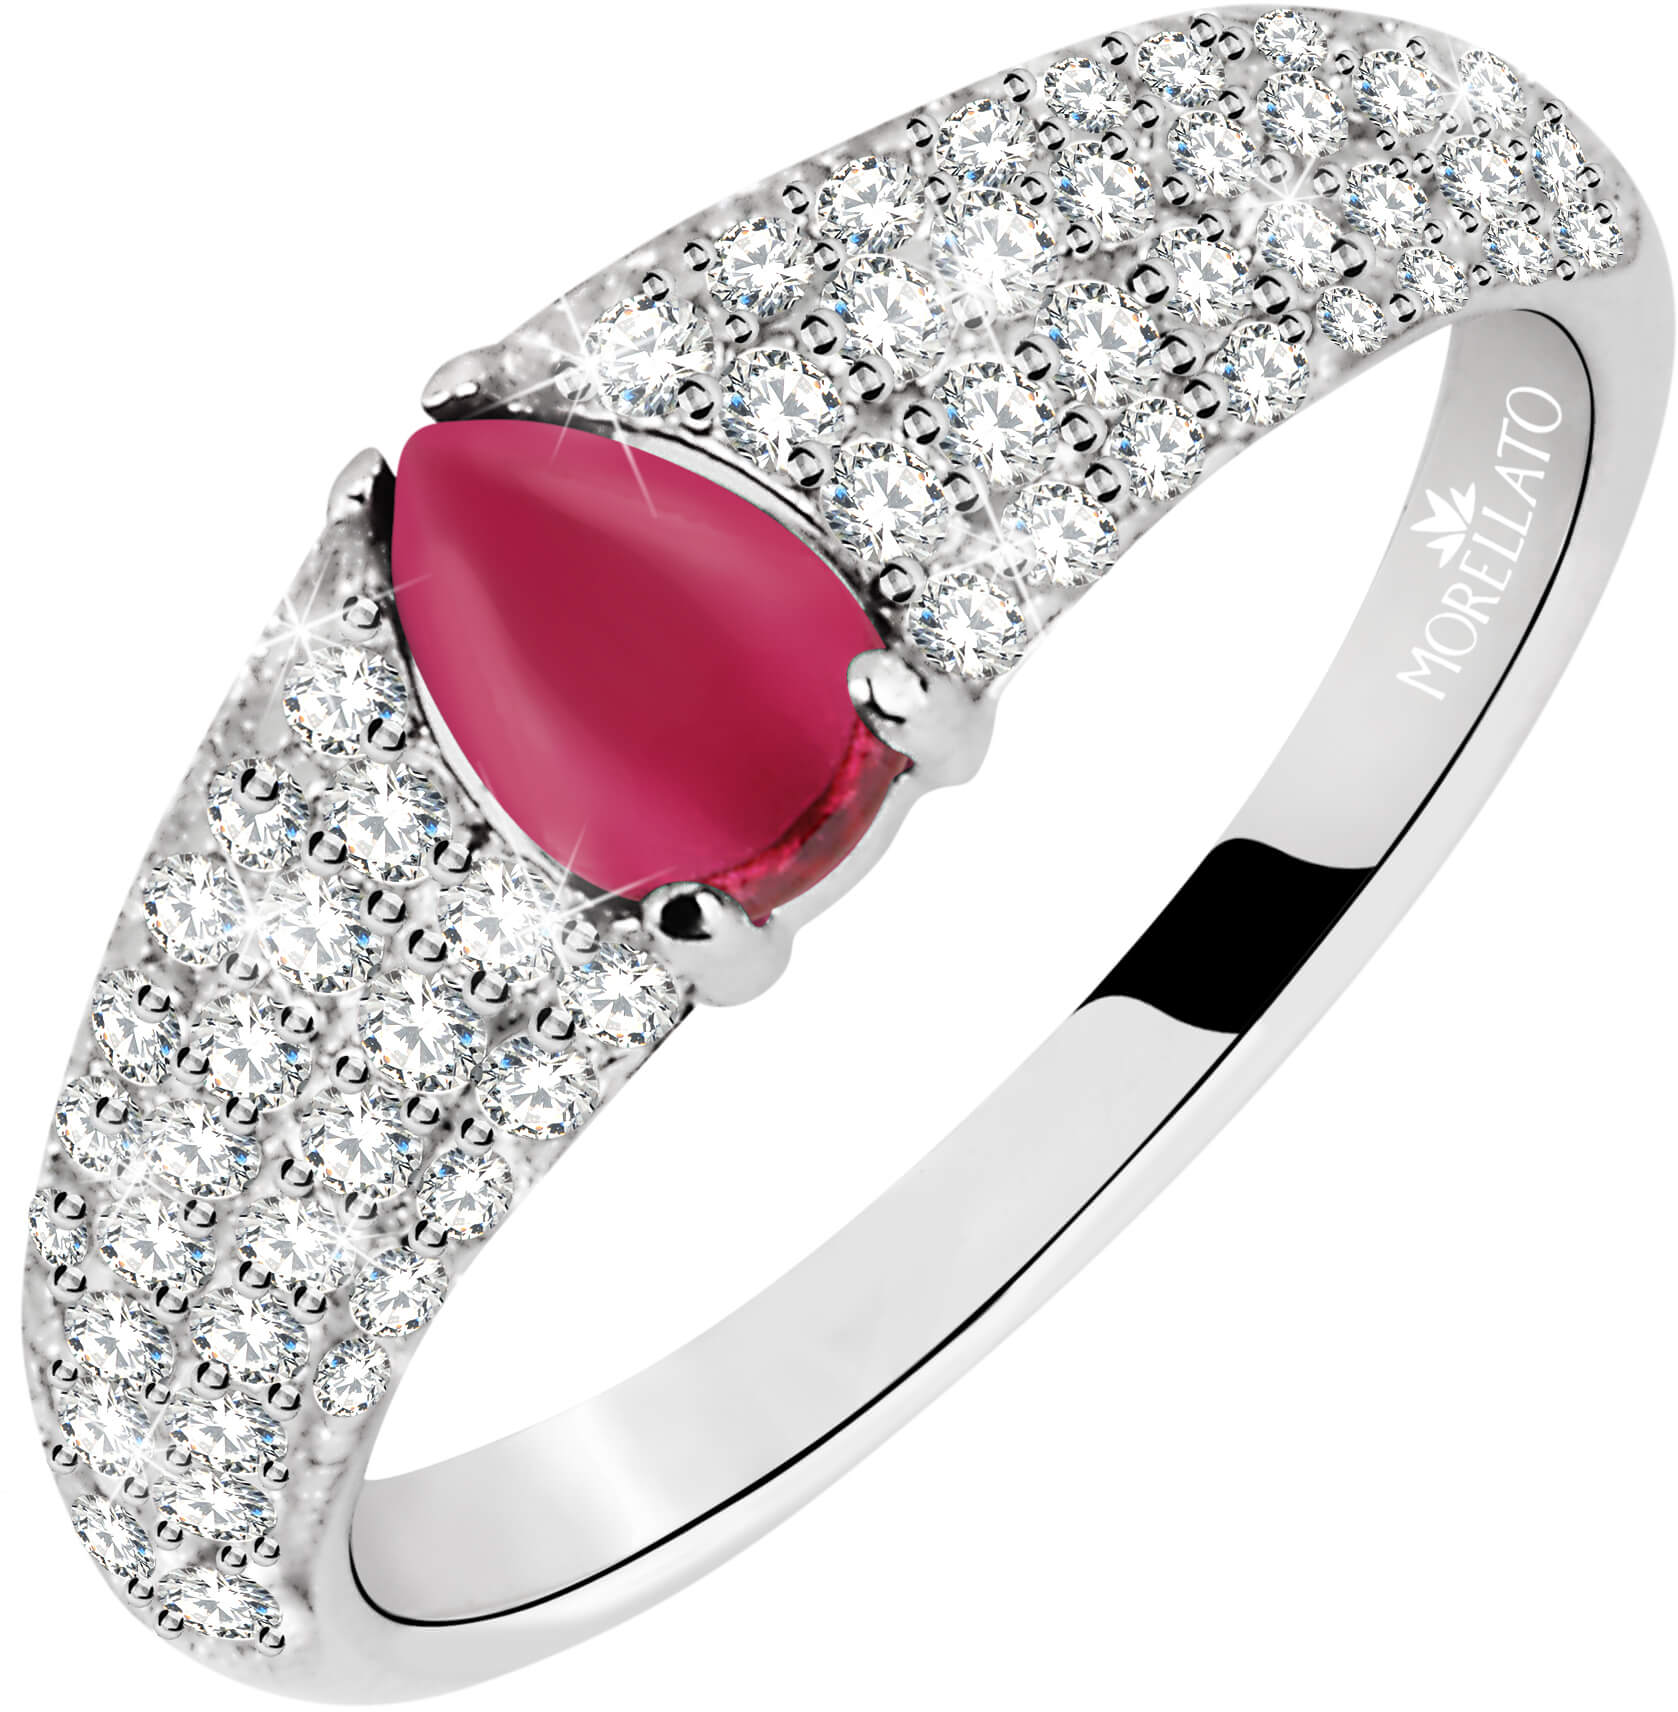 Morellato Třpytivý stříbrný prsten s červeným kamínkem Tesori SAIW42 52 mm